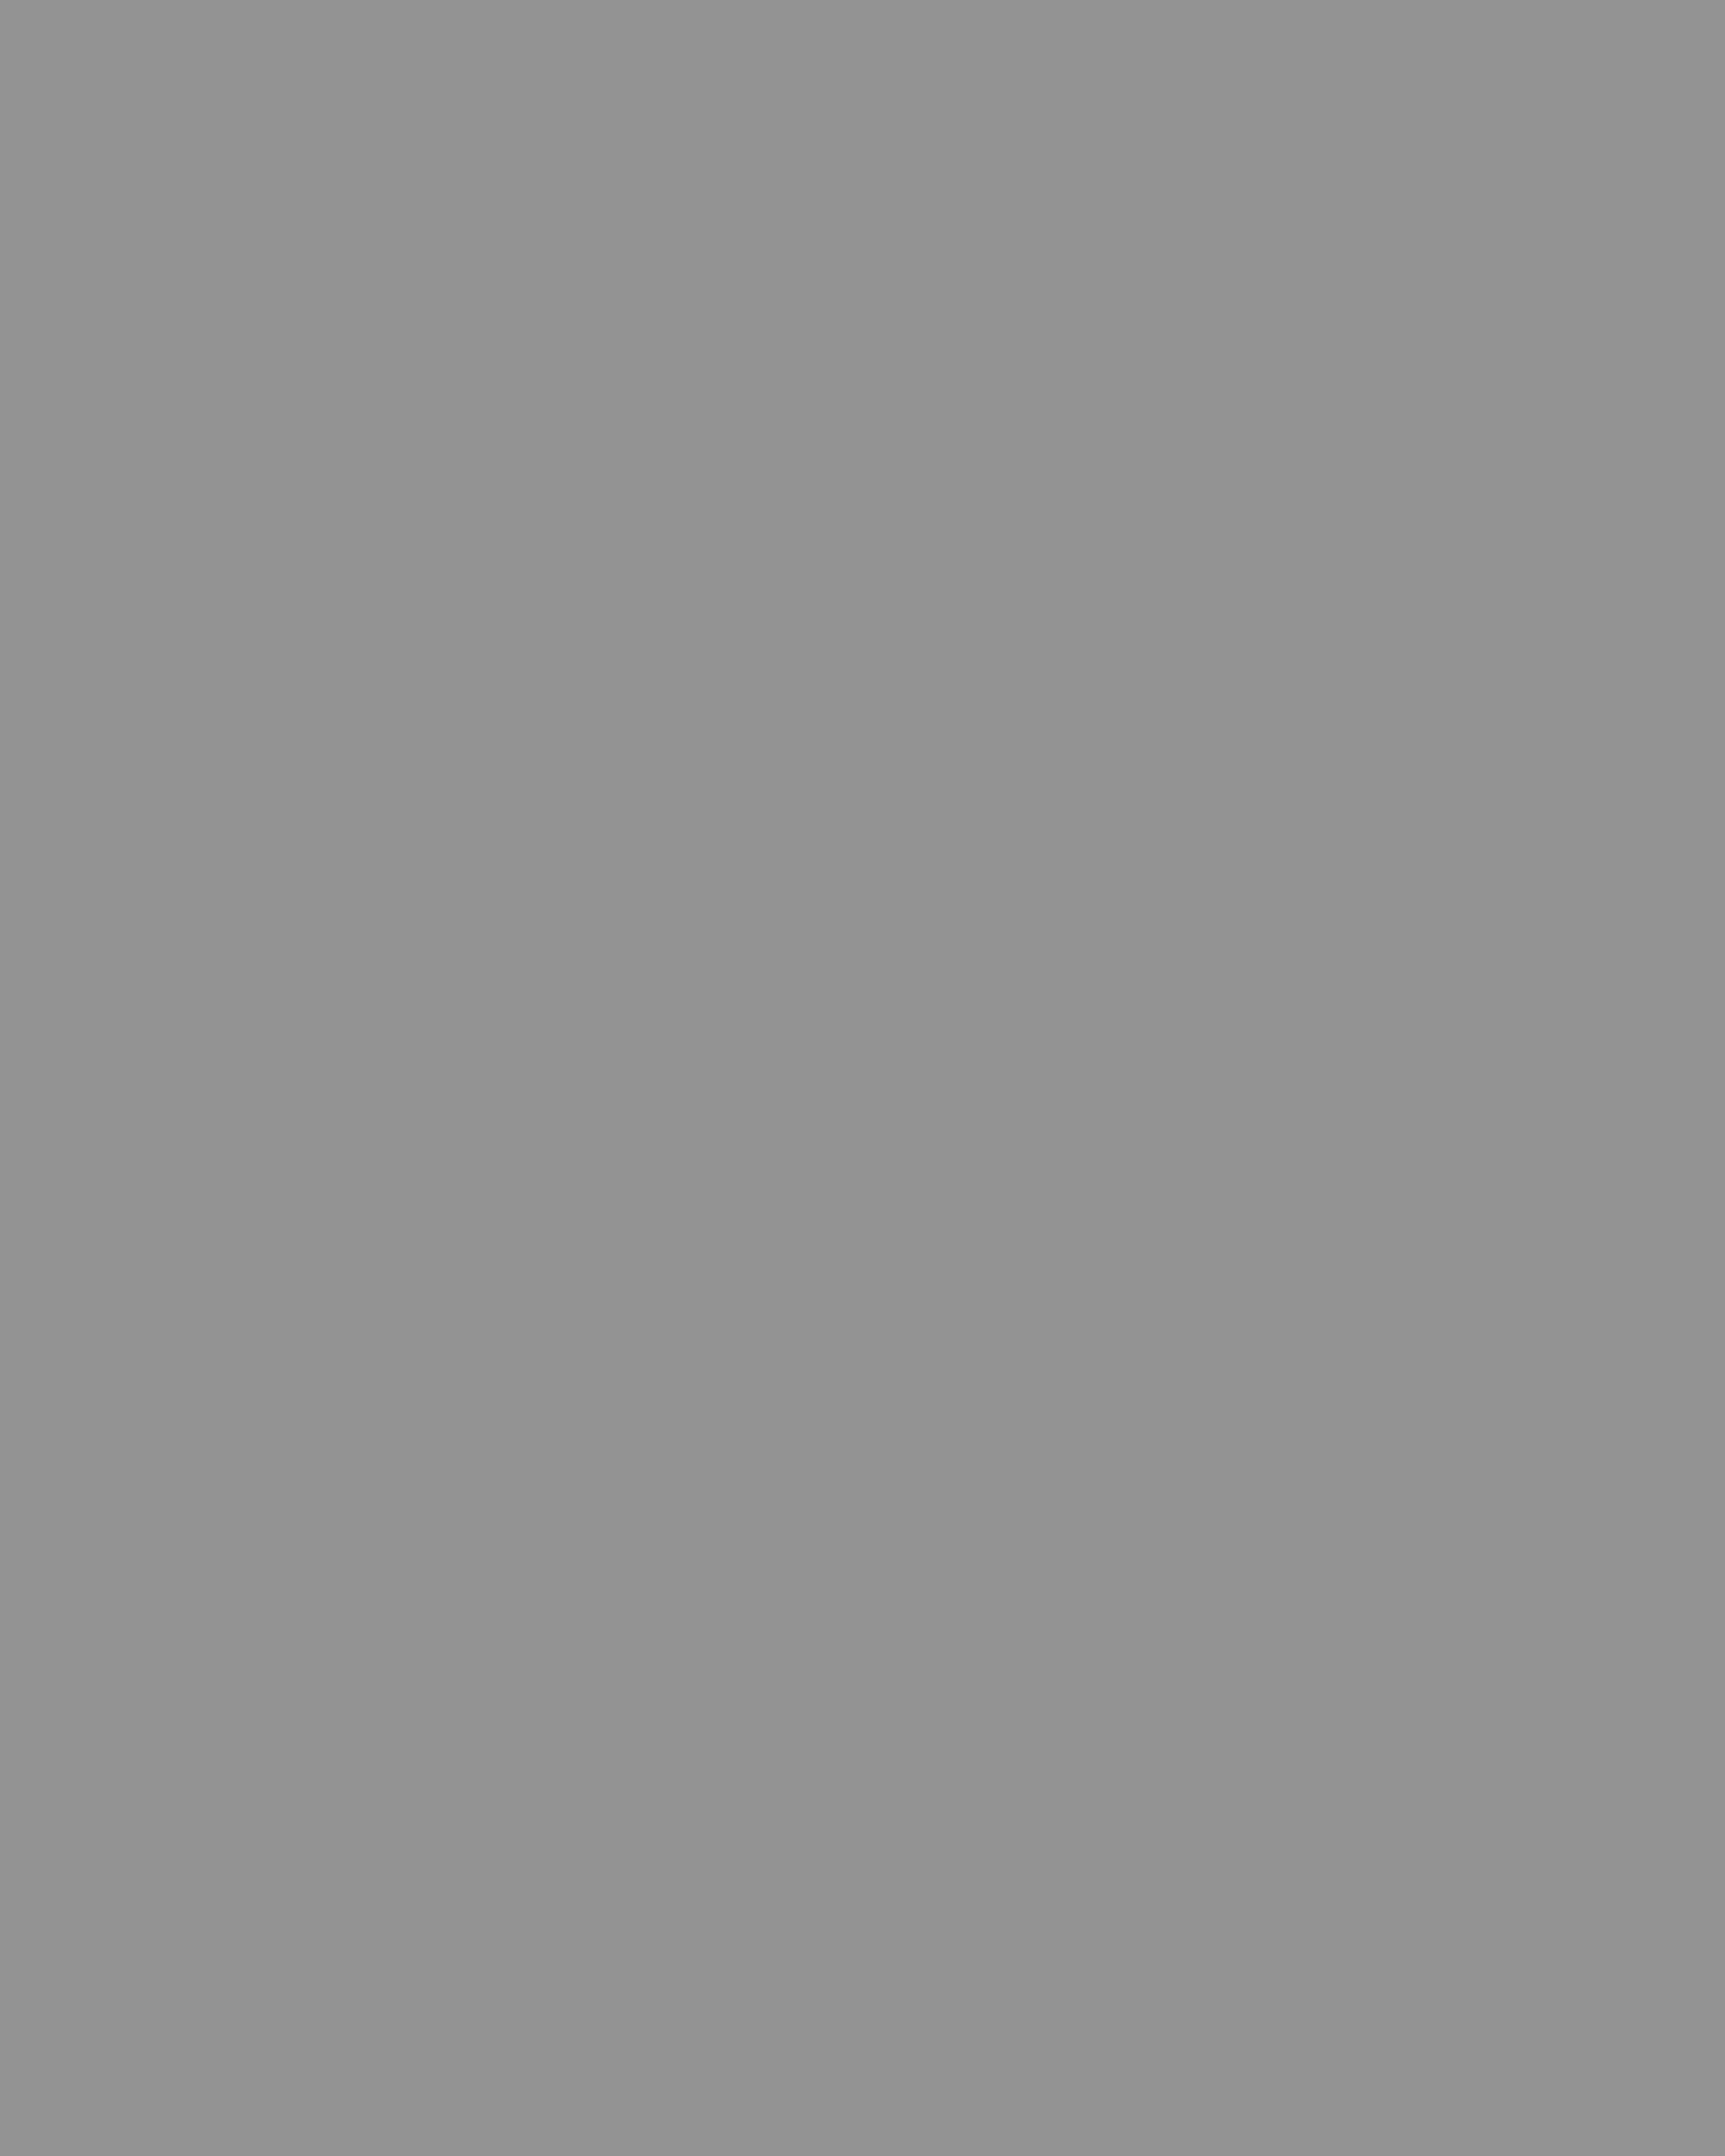 Николай Островский. Волынская губерния, 1918 год (?). Фотография: репродукция ТАСС